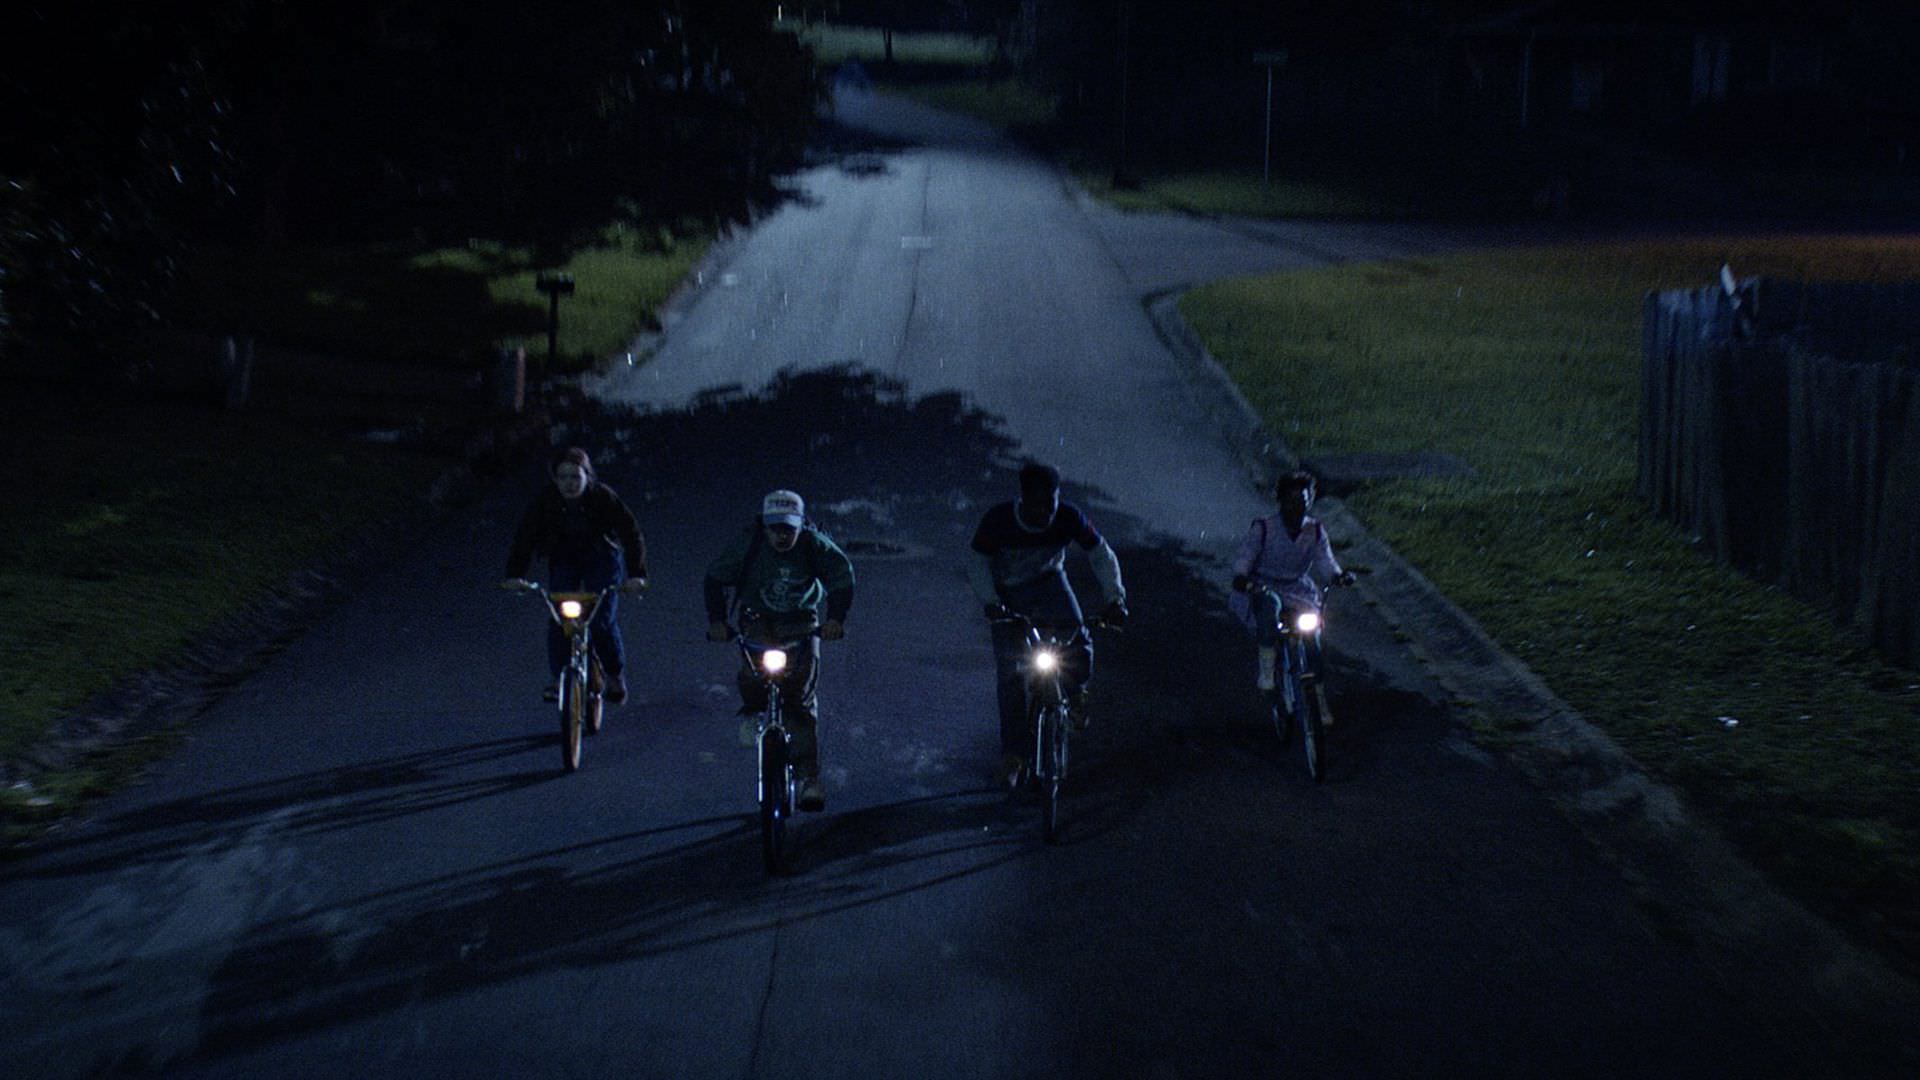 شخصیت‌های فصل چهارم سریال Stranger Things در حال دورچرخه سواری در شب در هاوکینز